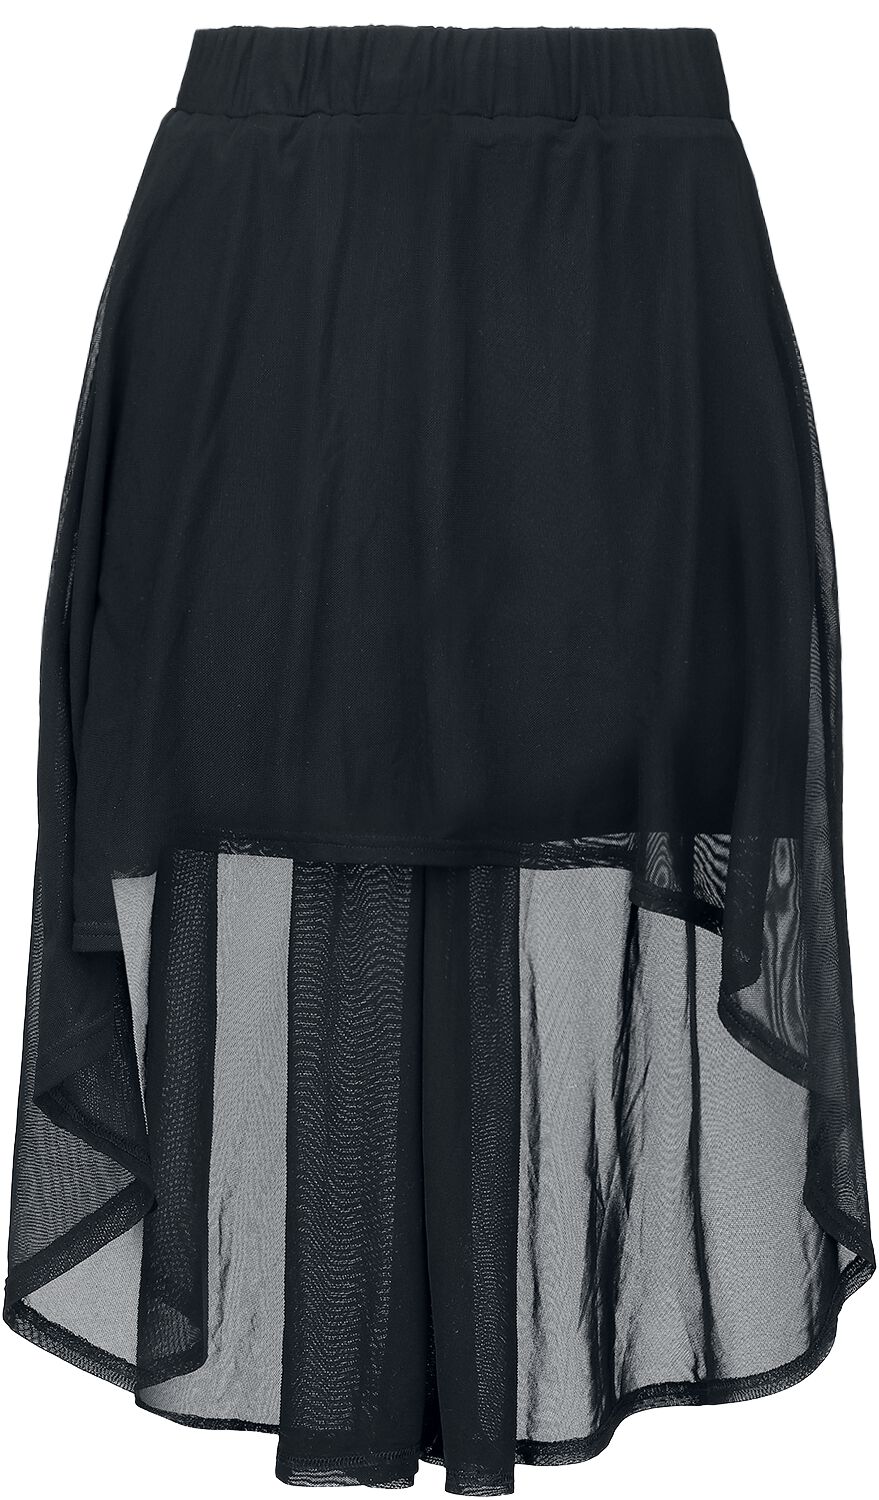 Gothicana by EMP - Skirt With Transparent Details - Kurzer Rock - schwarz - EMP Exklusiv!